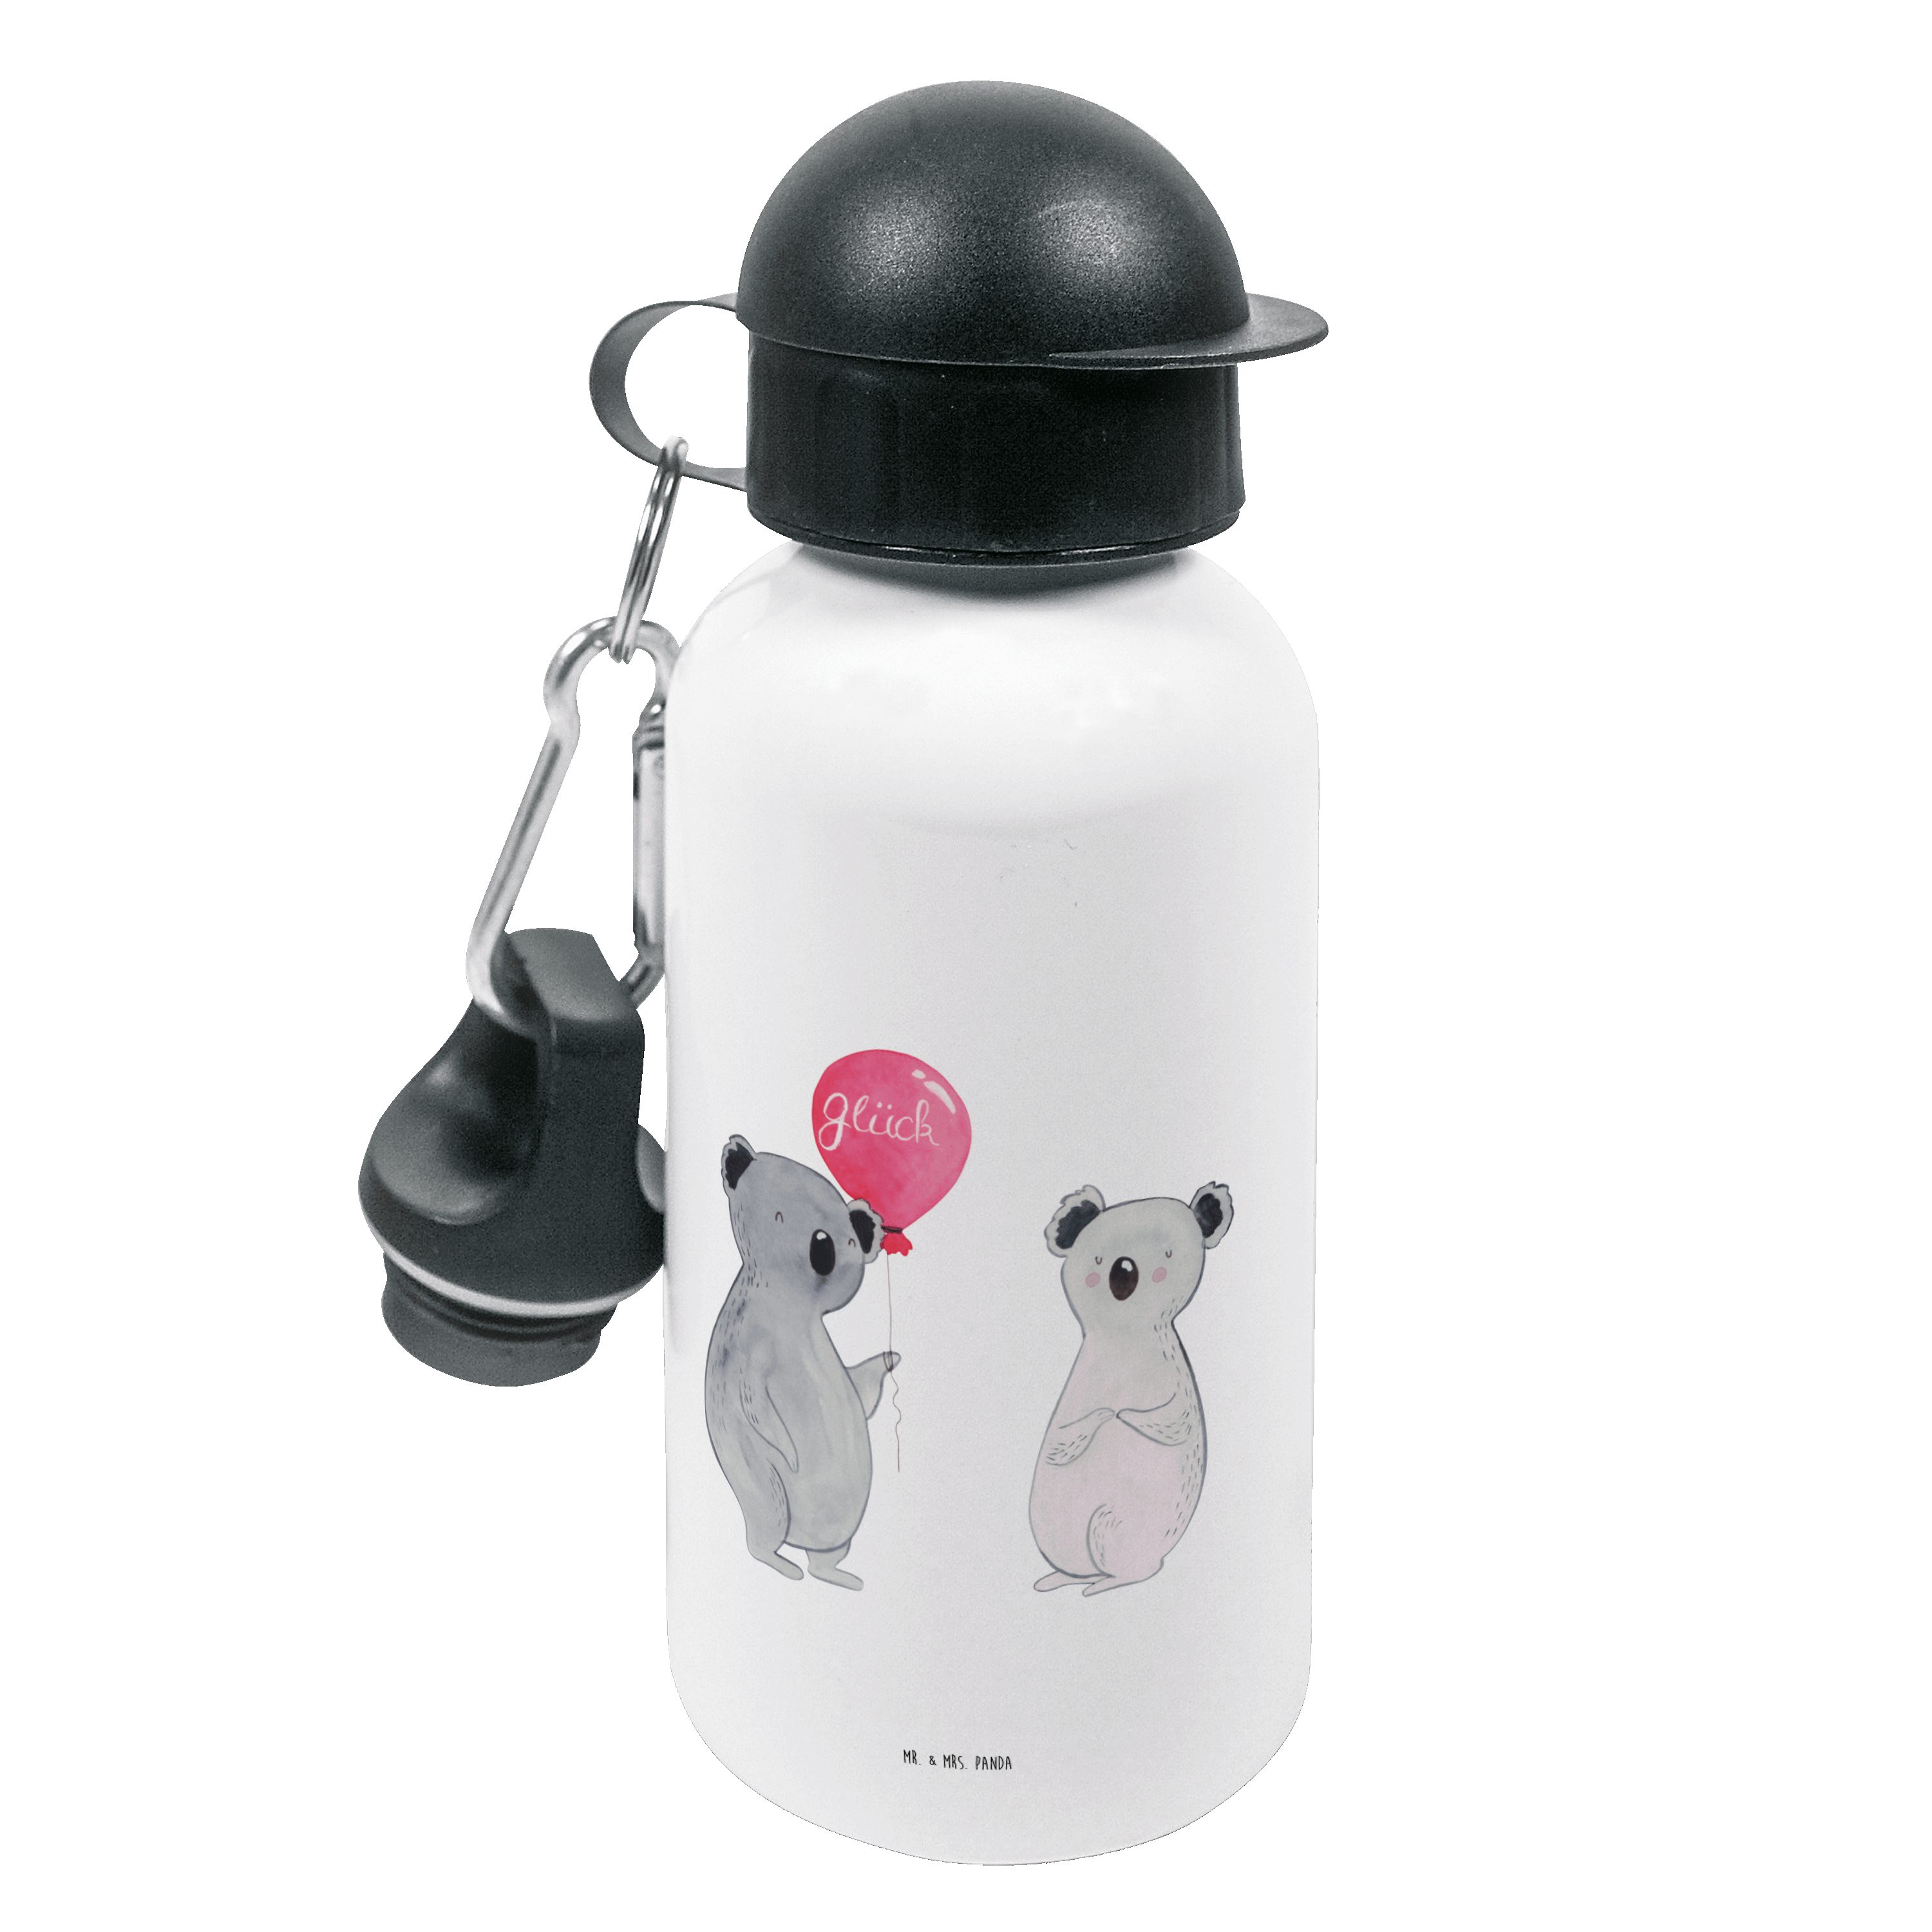 Mr. & Mrs. Panda Trinkflasche Koala Luftballon - Weiß - Geschenk, Kinder, Koalabär, Geburtstag, Gru